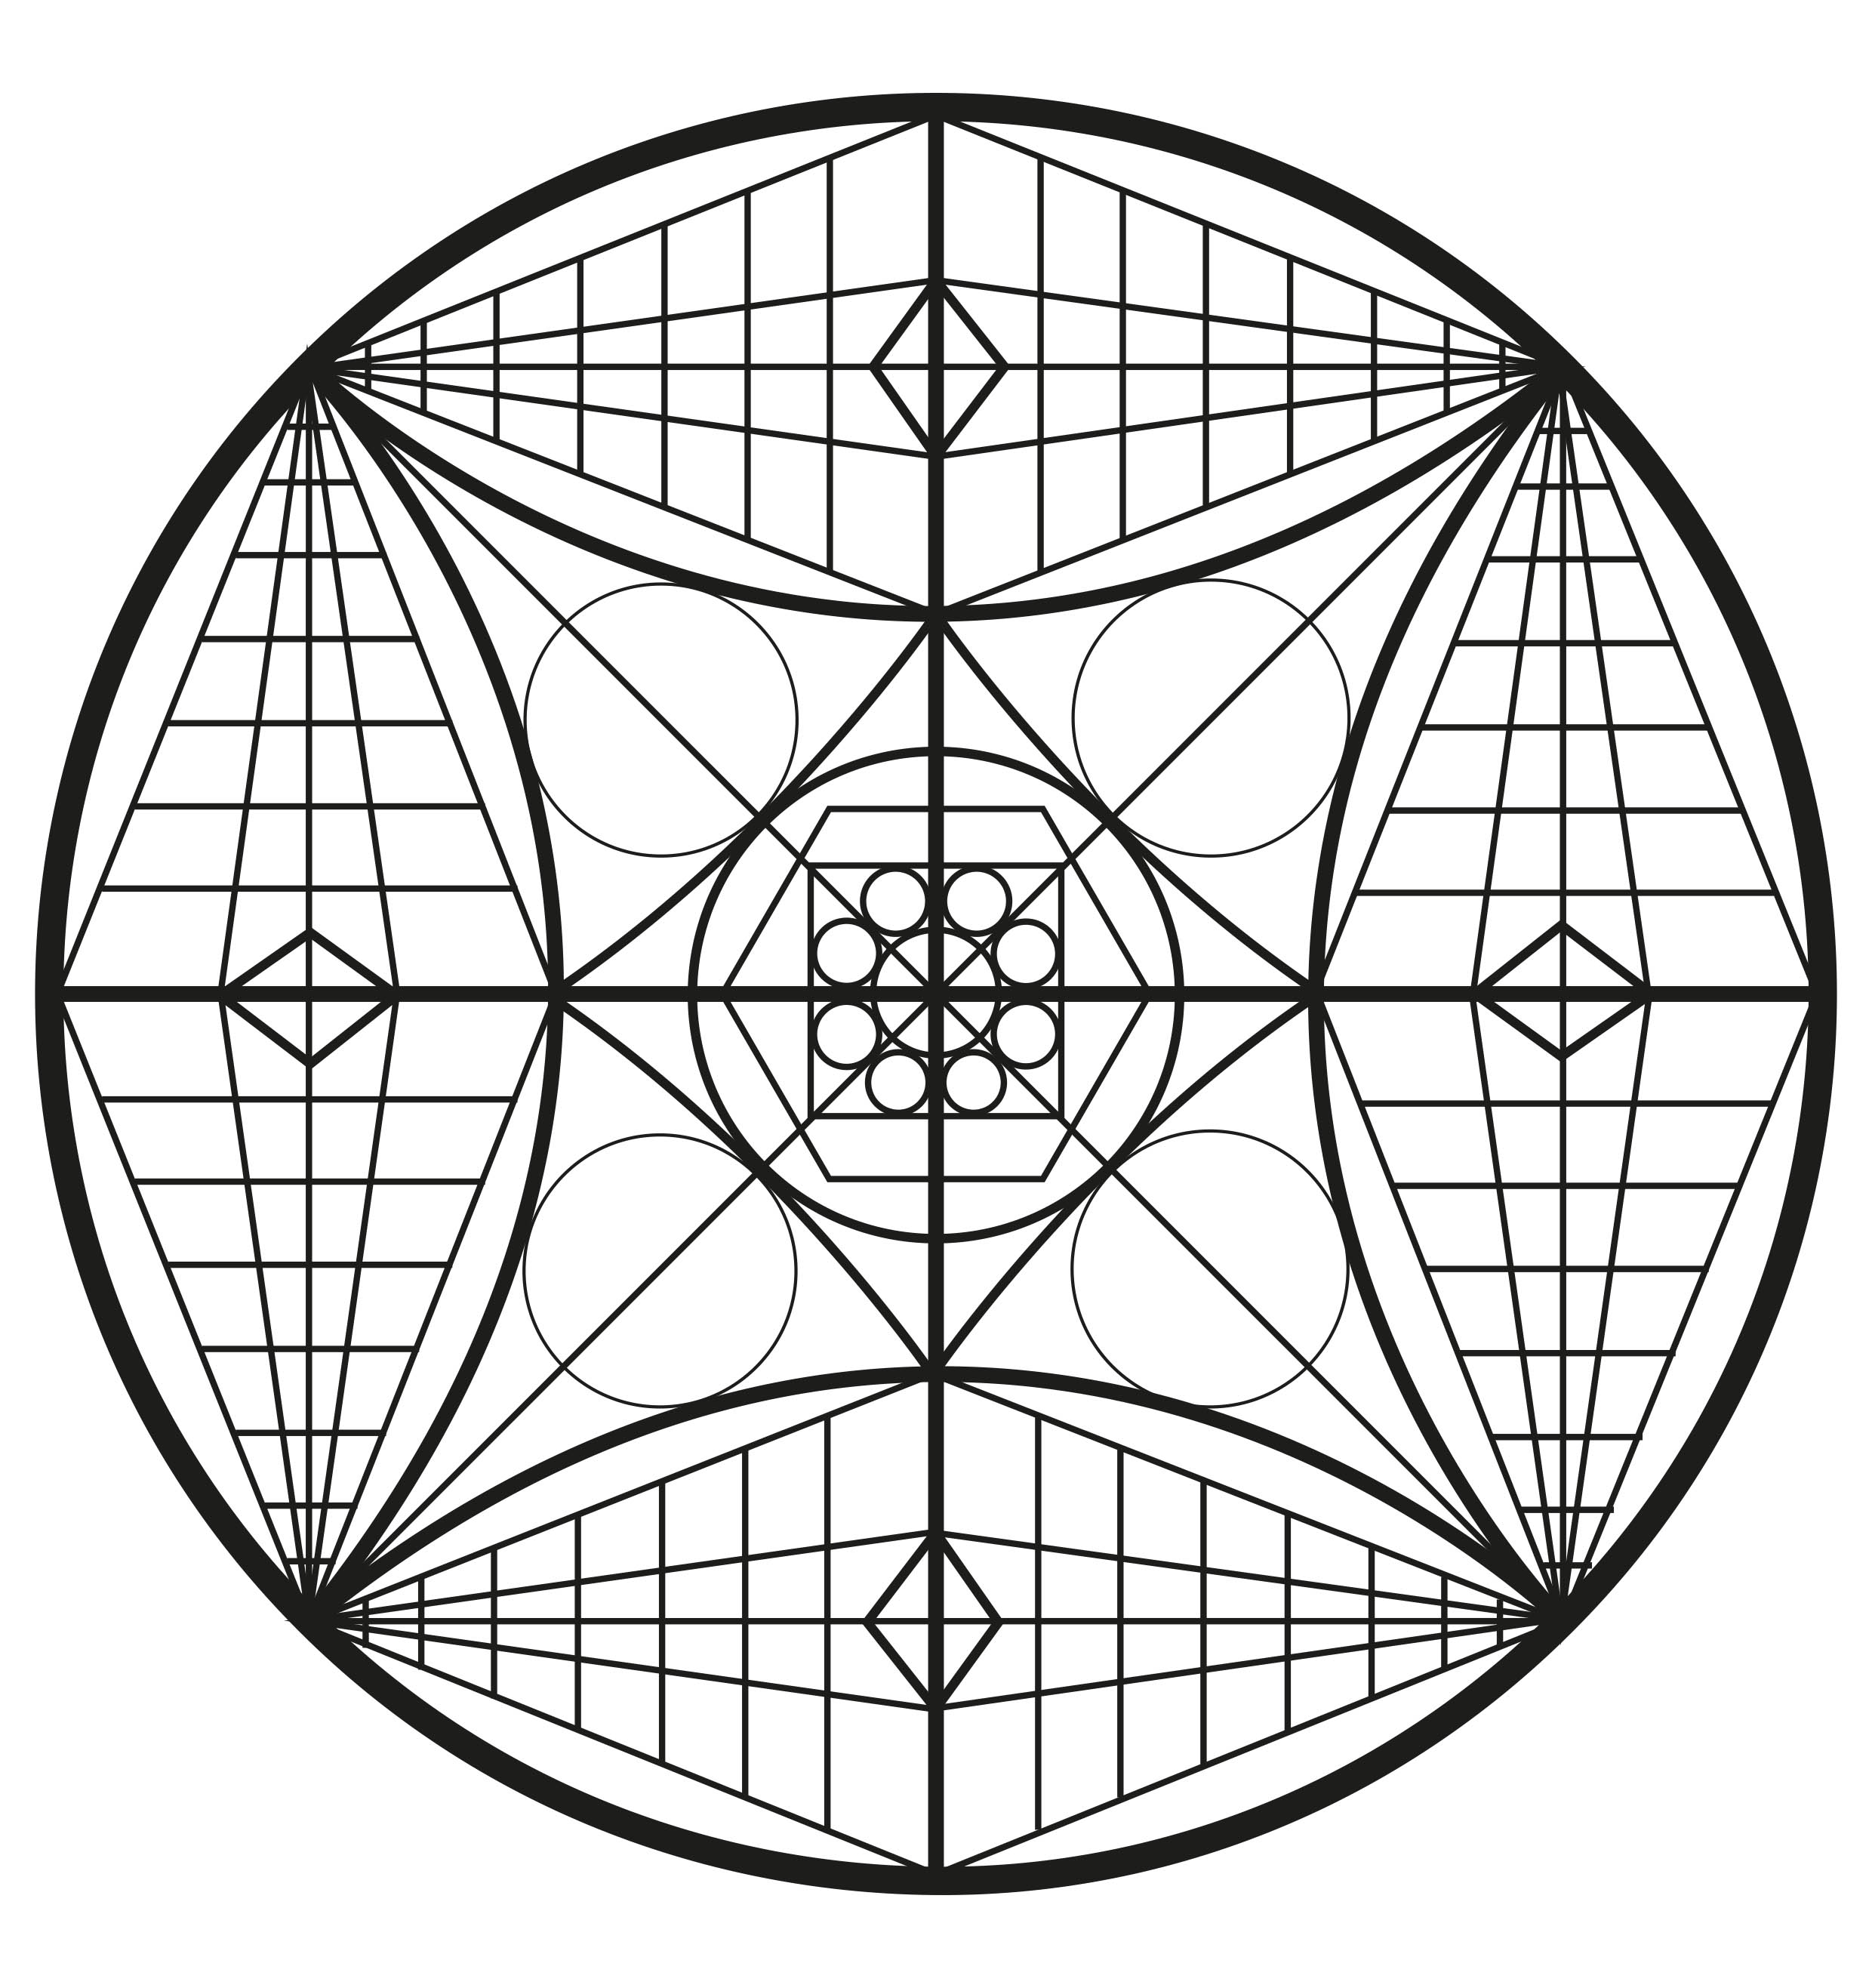 C'est parti pour des minutes de détente avec ce superbe Mandala composé de formes très symétriques, géométriques et harmonieuses.